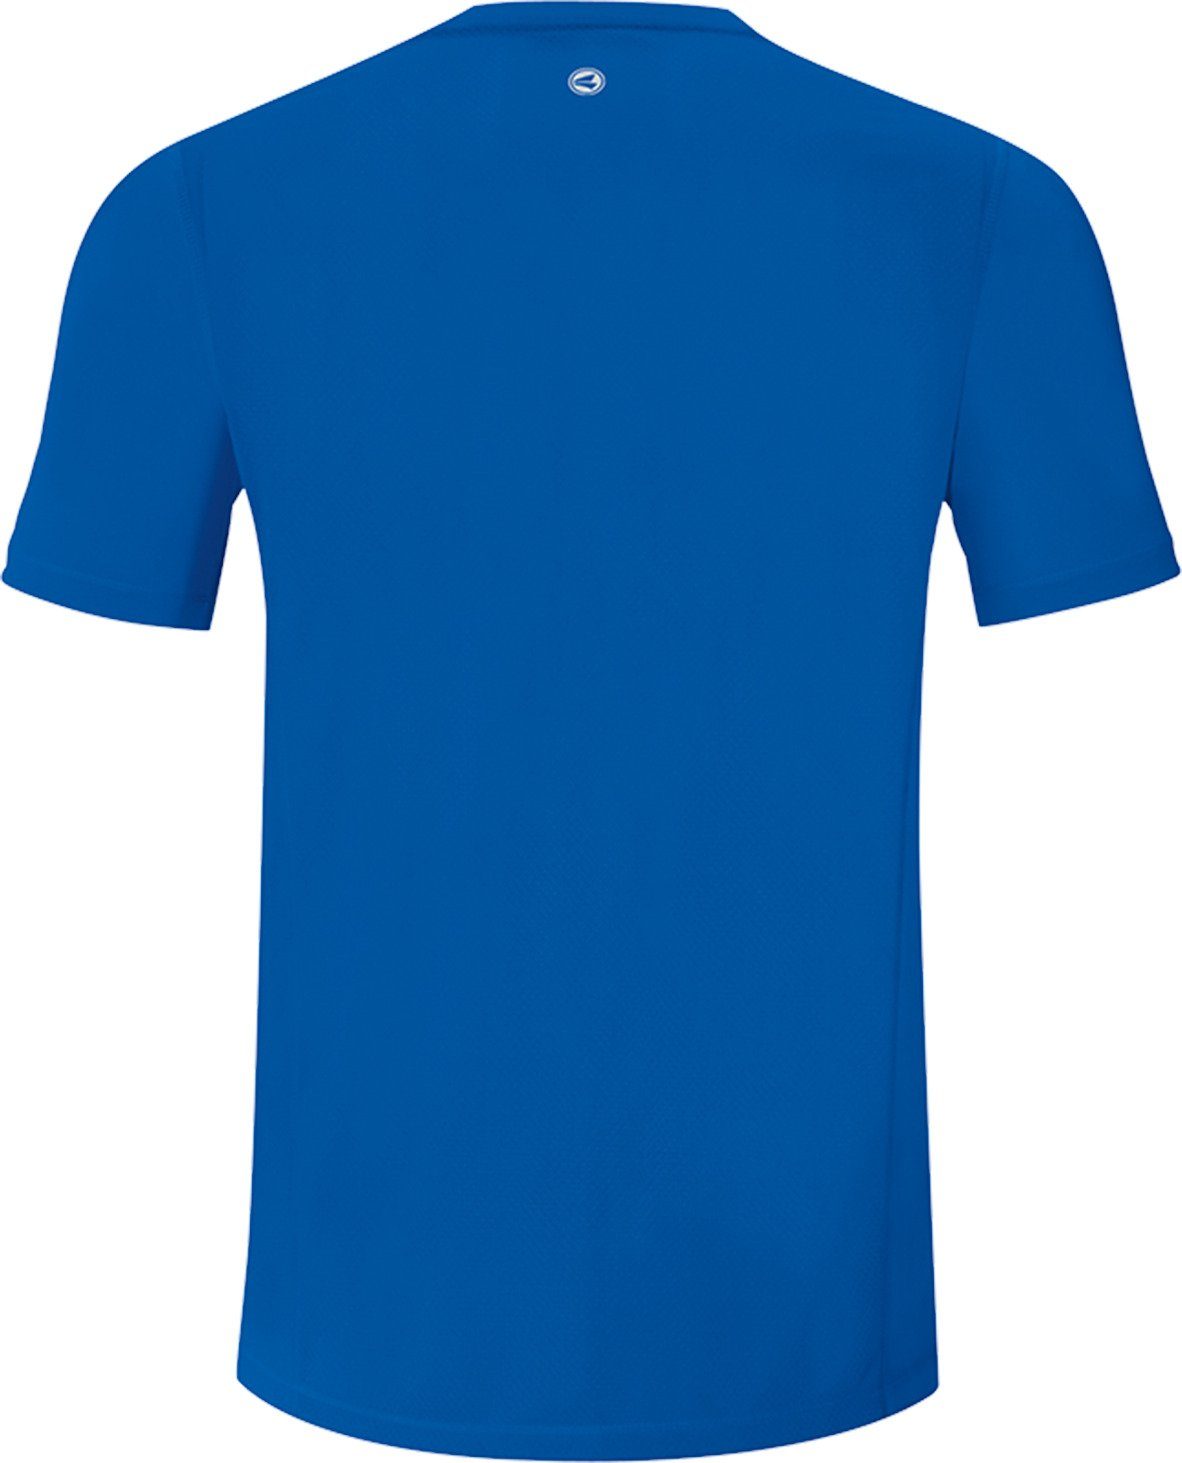 Jako Blau T-Shirt 2.0 Running default Run T-Shirt